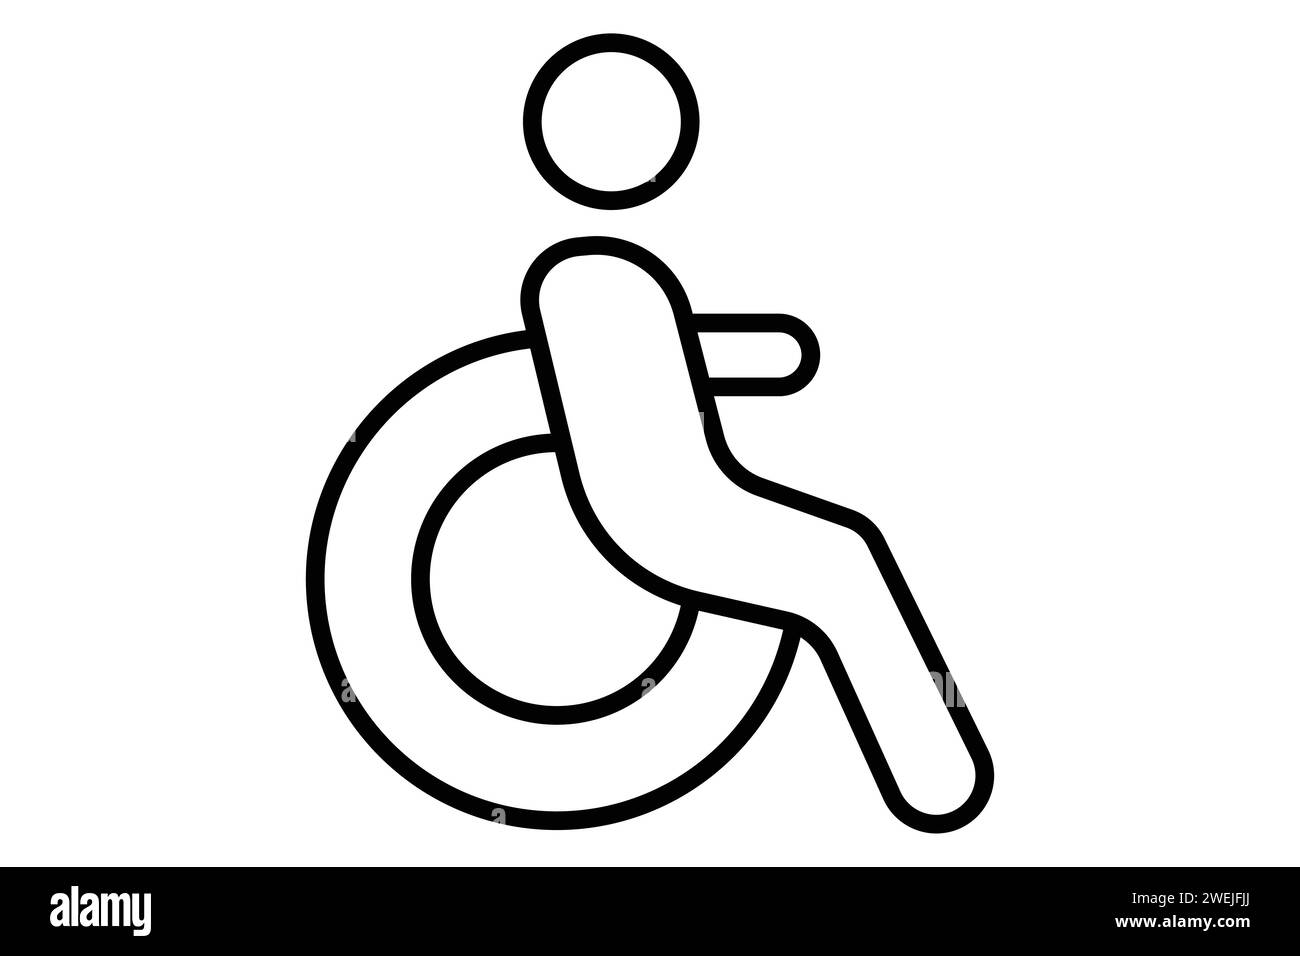 Rollstuhl für Behinderte Icon. Symbol für zugängliche Routen. Liniensymbolstil. Elementabbildung Stock Vektor